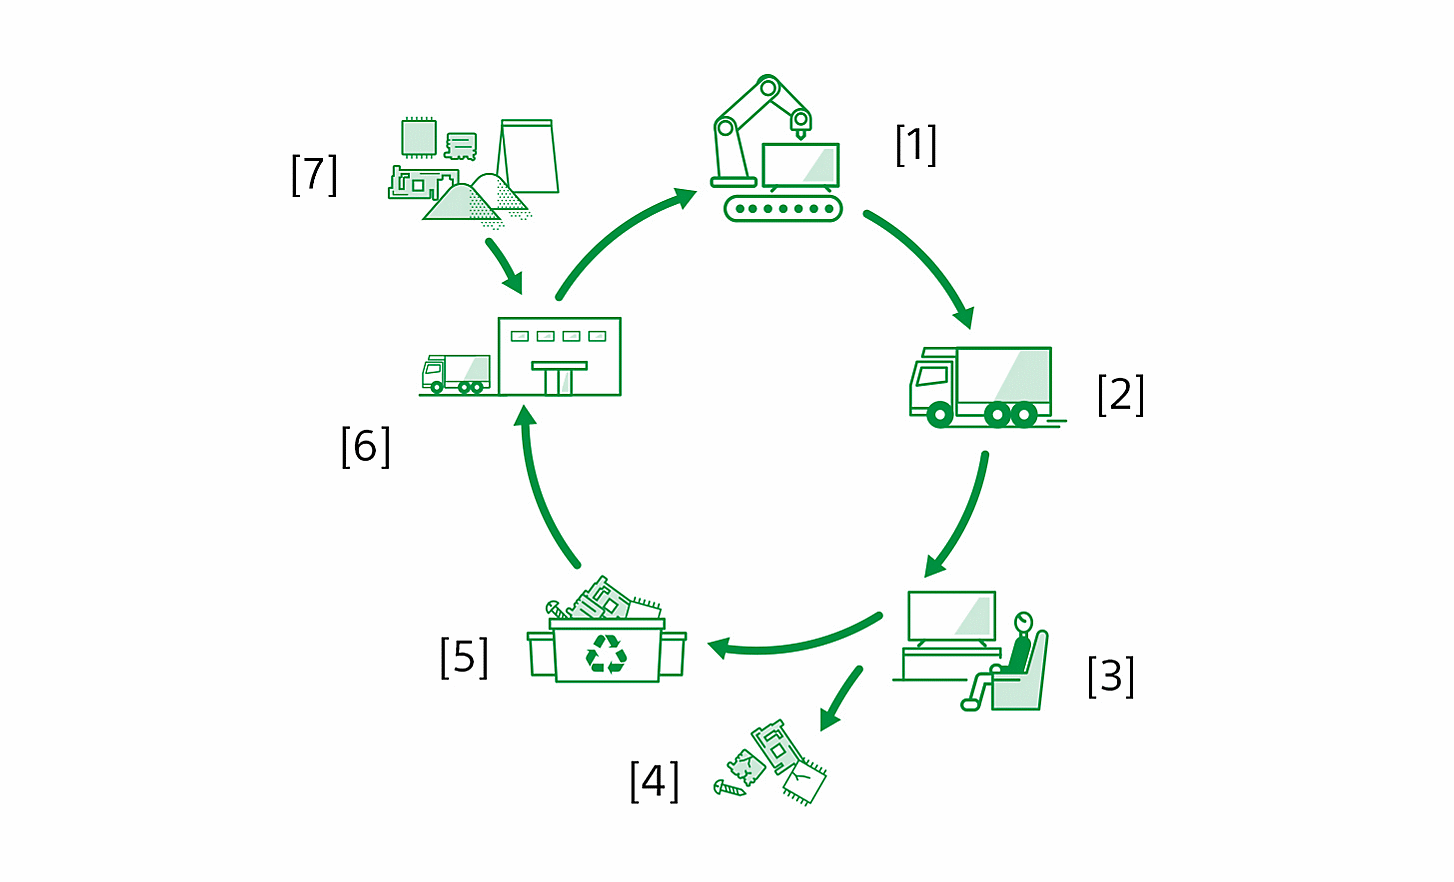 Dijagram koji prikazuje životni ciklus proizvoda s oznakama, od proizvodnje do recikliranja: [1] Proizvodnja proizvoda u proizvodnim pogonima [2] Logistika [3] Upotreba proizvoda od strane kupaca [4] Nabava i odlaganje resursa [5] Postrojenja za reciklažu [6] Izrada dijelova od strane dobavljača [7] Nabava resursa